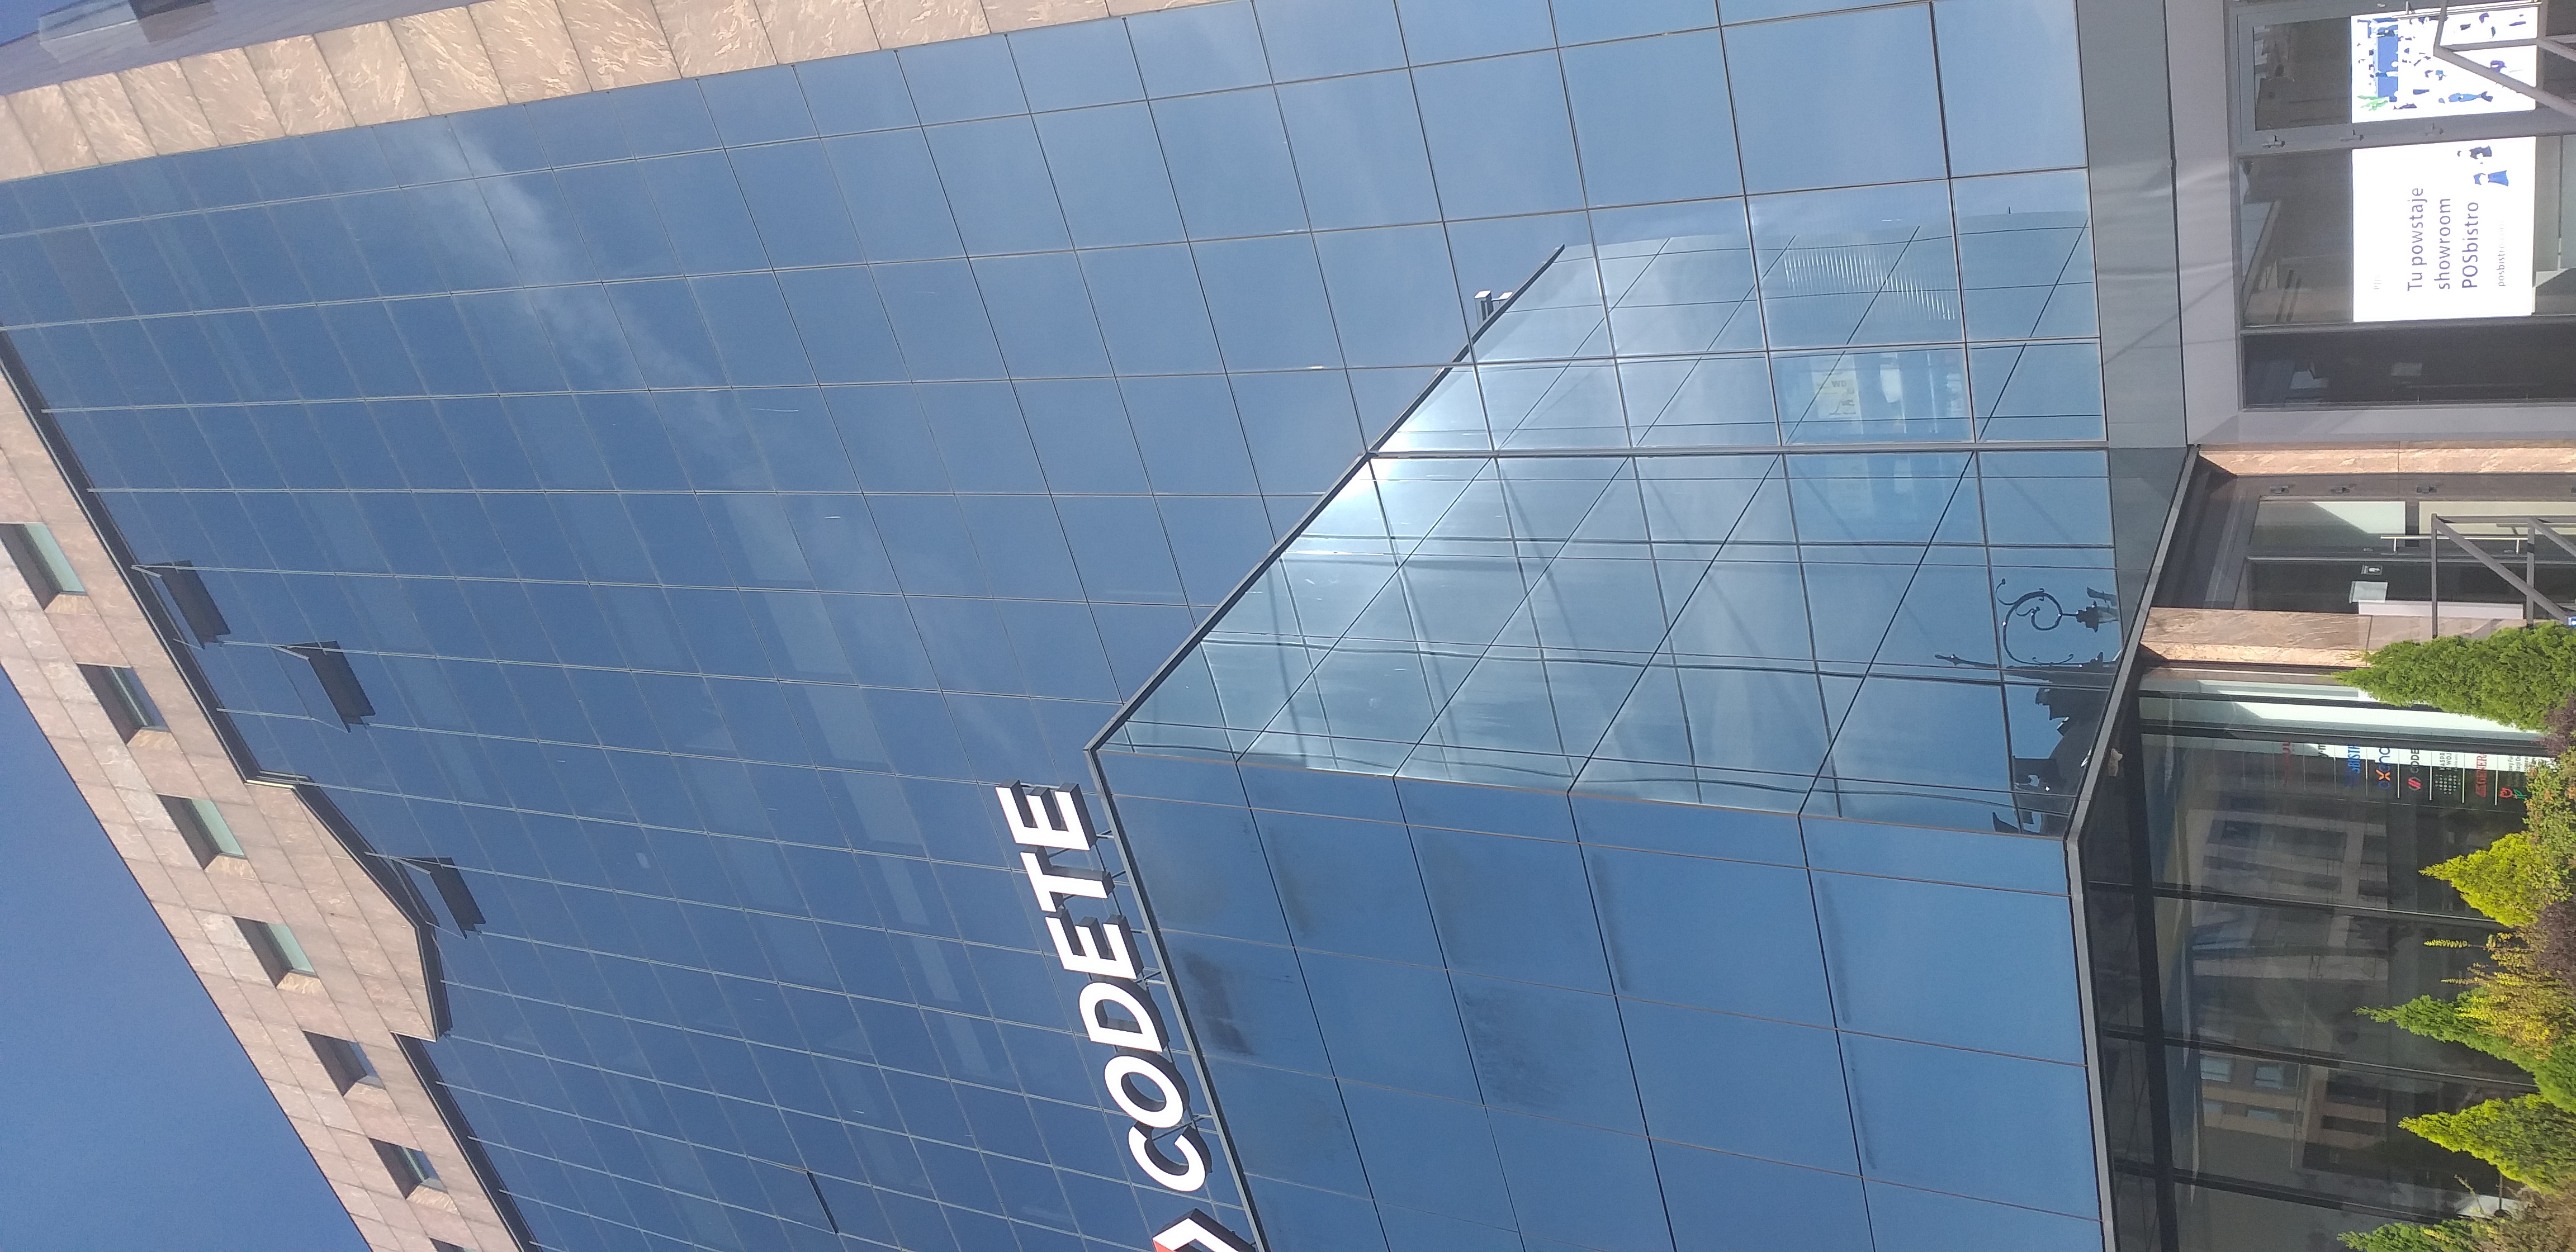 Budynek biurowy ze szklaną ścianą, w której odbija się bezchmurne niebo. Na pierwszym planie niższa część budynku, na której dachu umieszczono napis „Codete”. W prawym, dolnym rogu widać drzwi wejściowe do budynku.